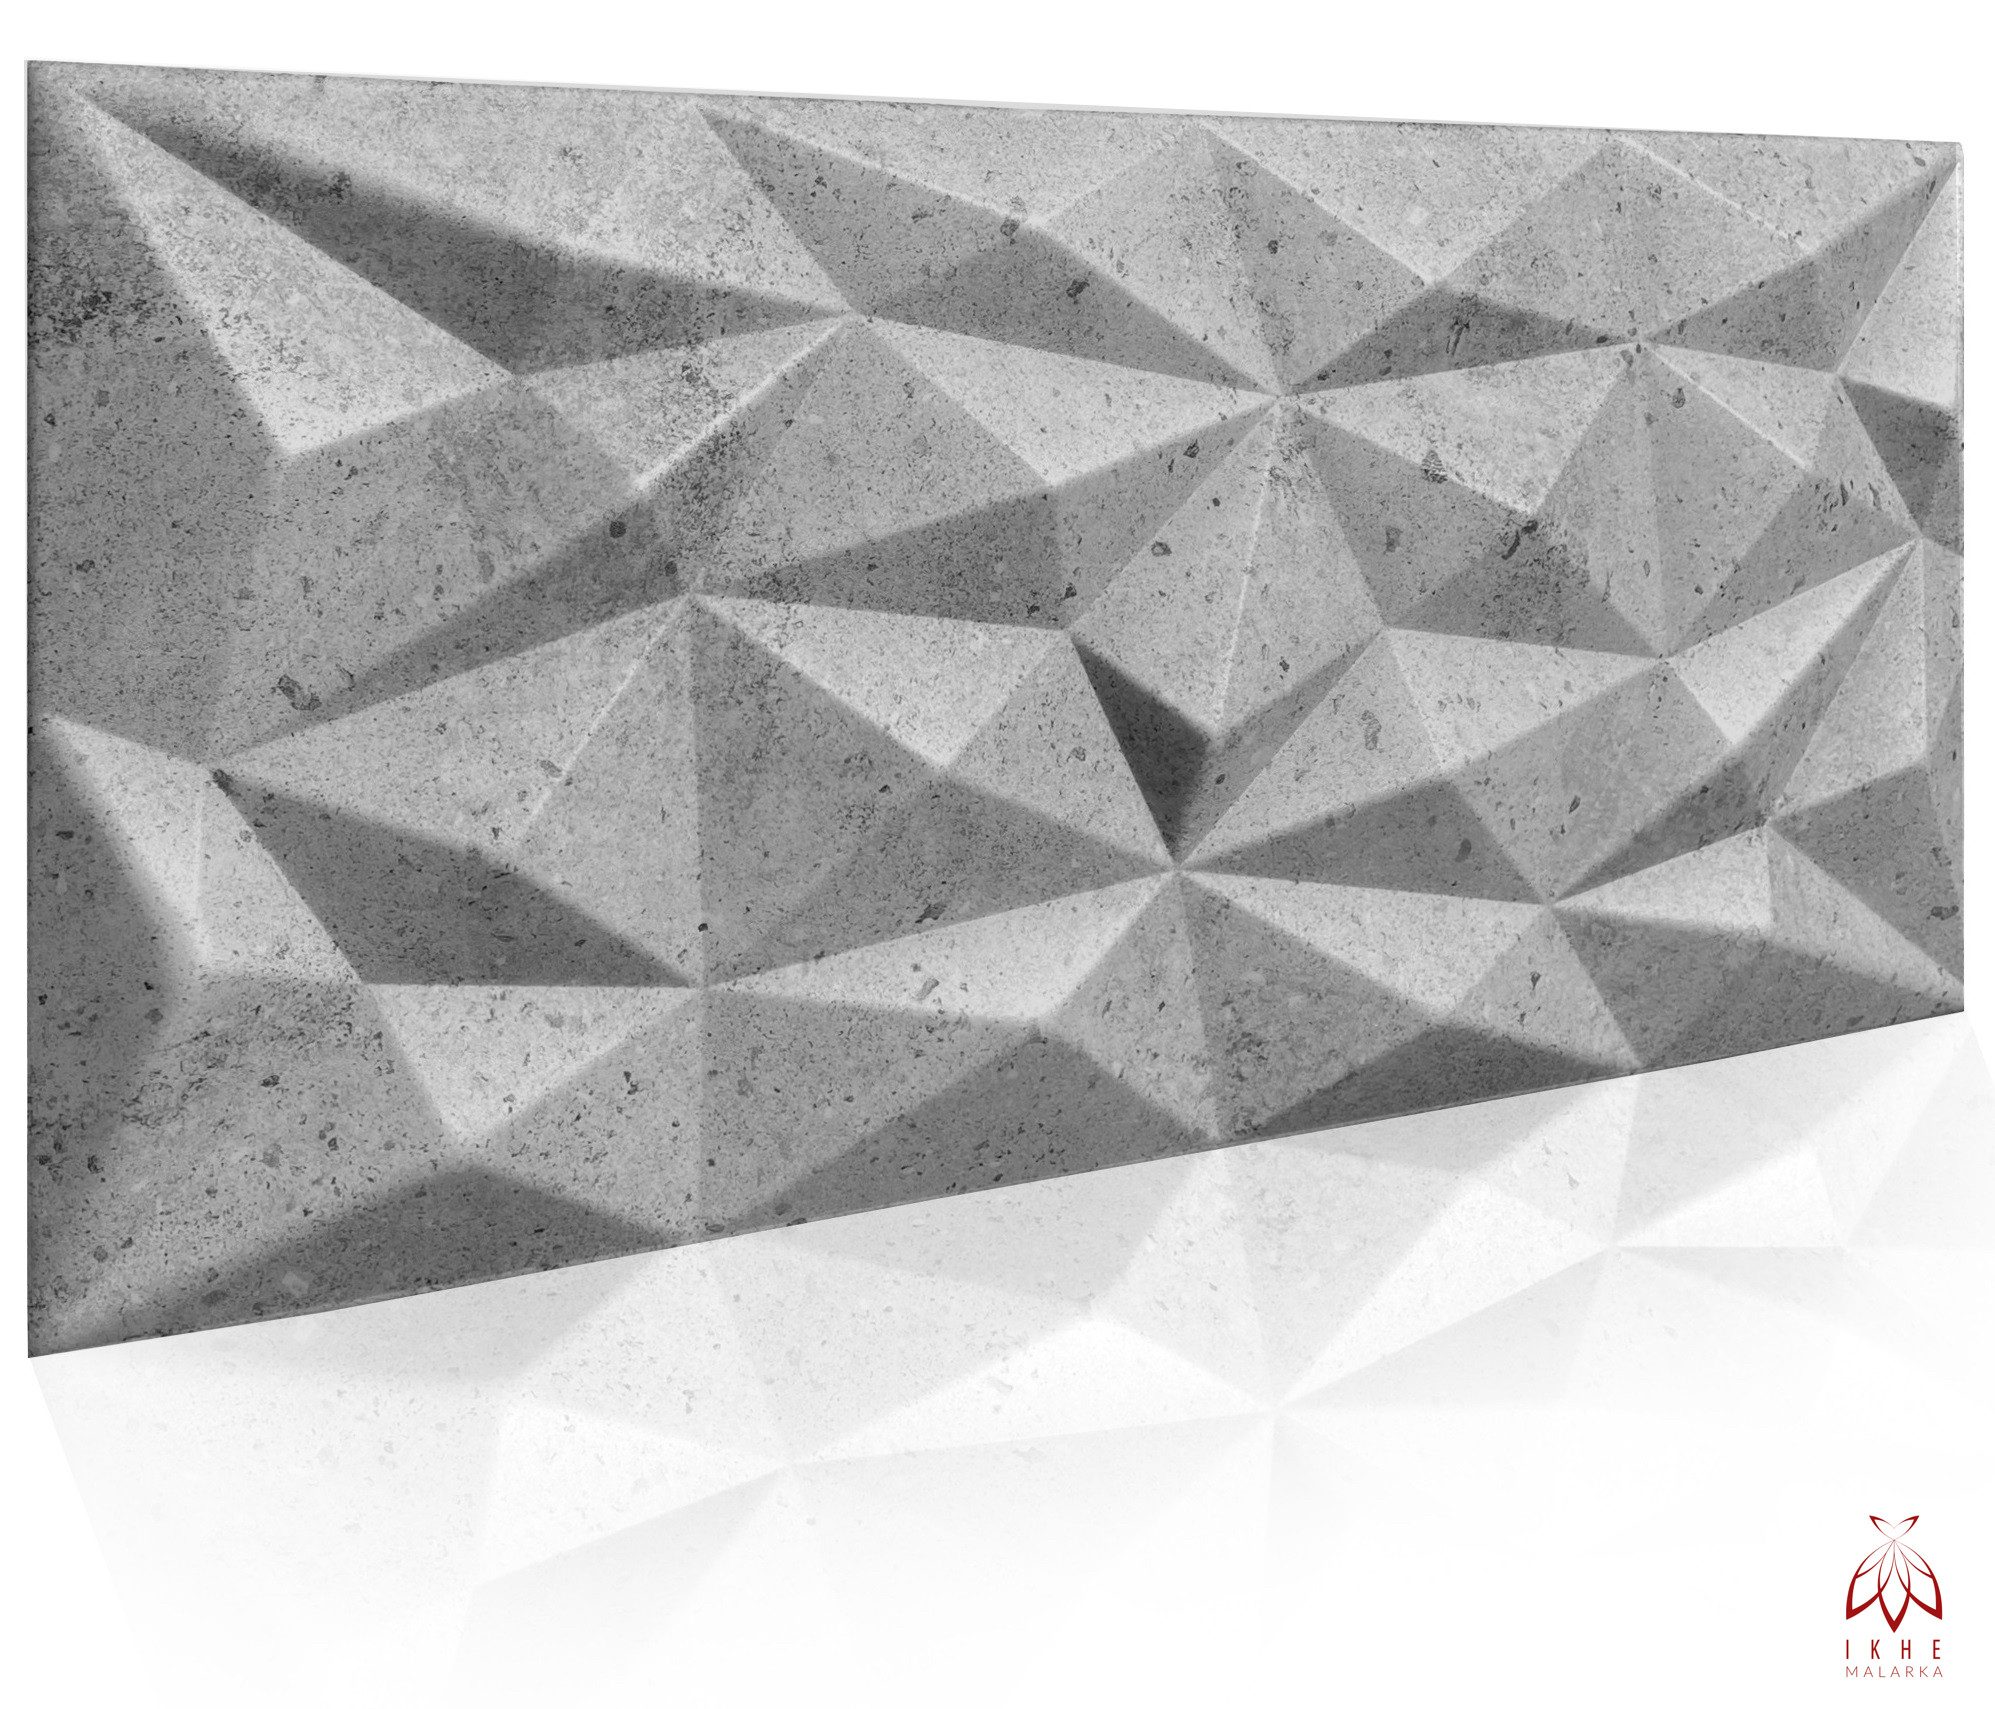 IKHEMalarka 3D Wandpaneel aus Polystyrol Styropor XPS, BxL: 50,00x100,00 cm, 0,50 qm, Paneelen für Decken & Wand 100x50cm